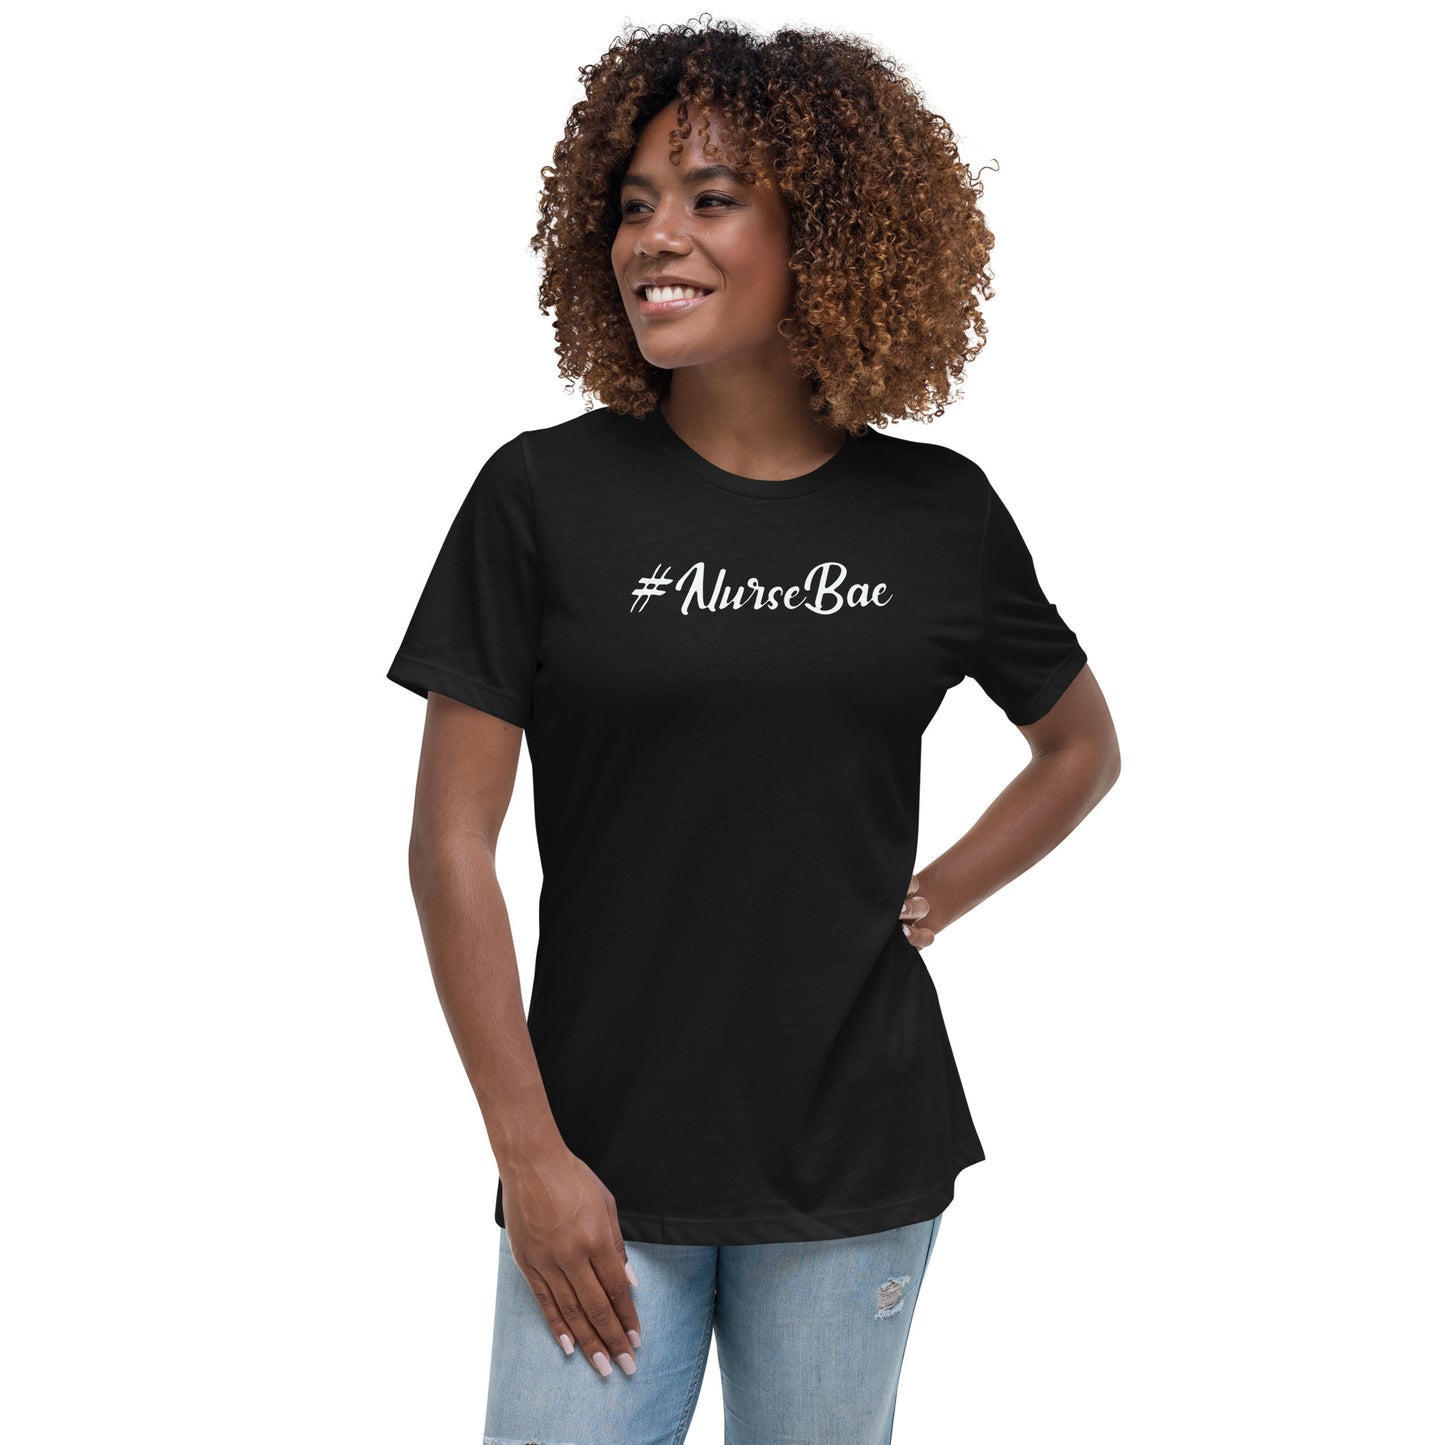 #NurseBae Women's Short Sleeve T-shirt